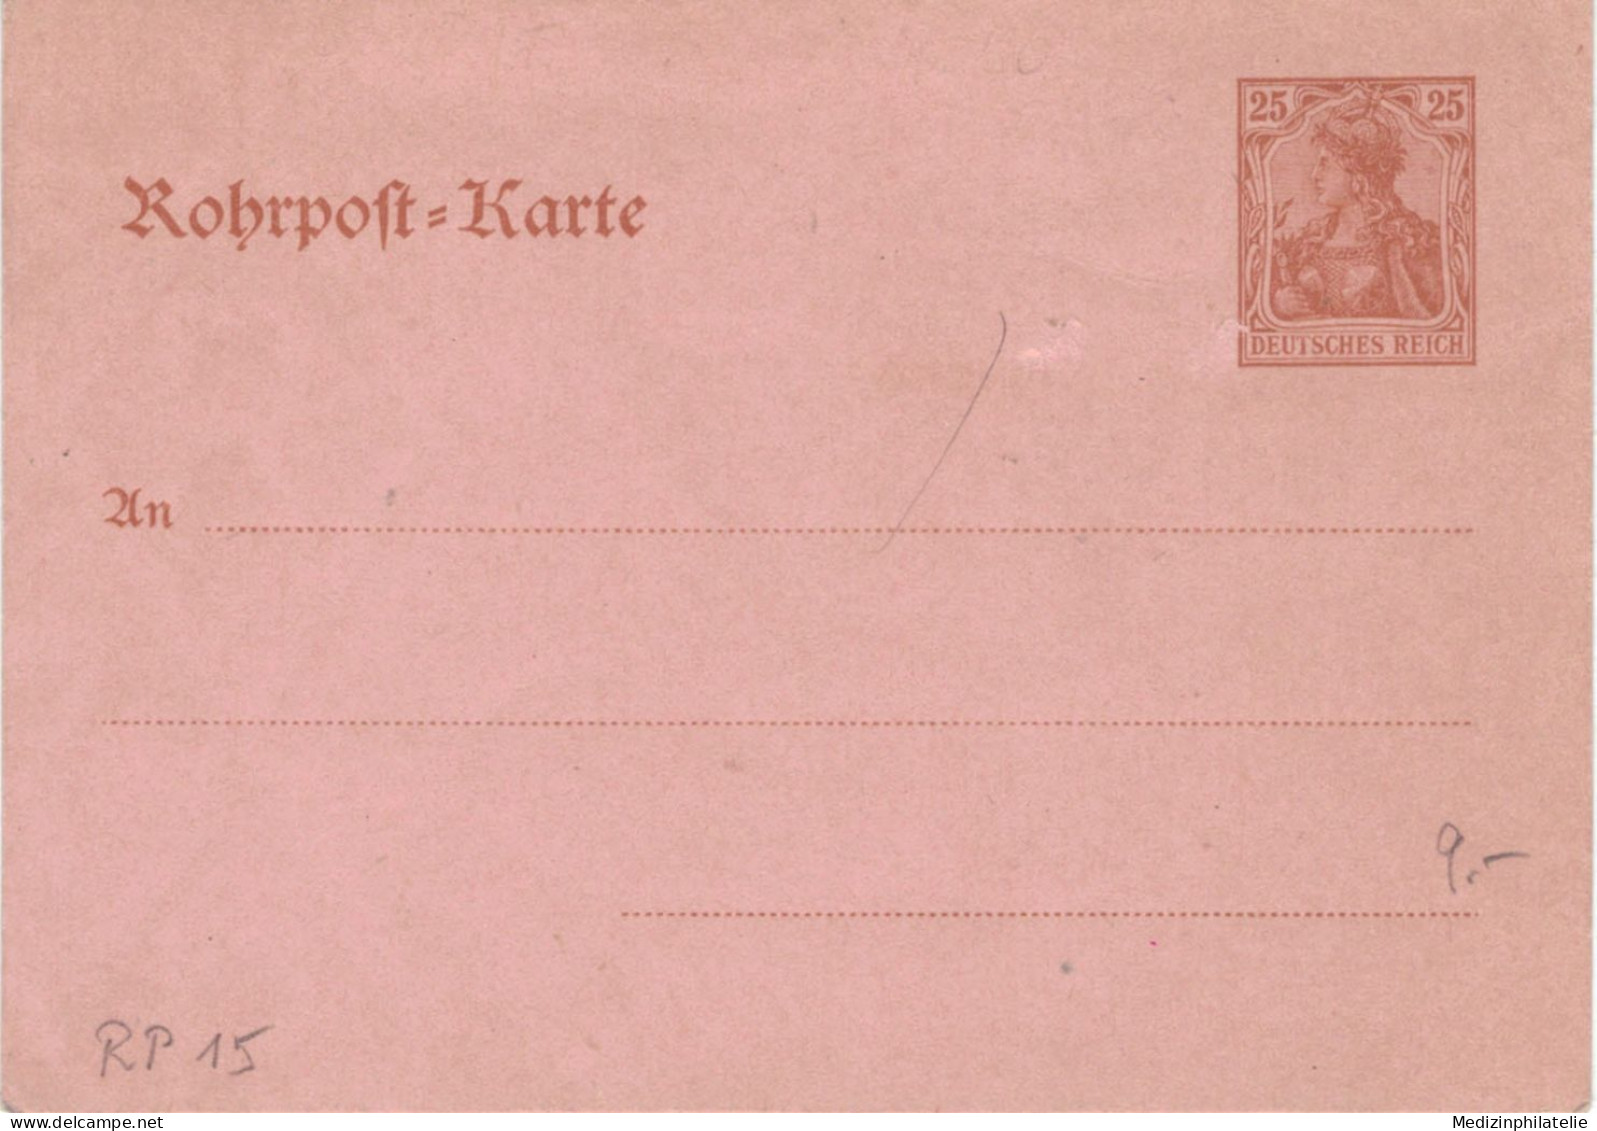 Rohrpost-Karte 25 Pf. Germania - Ungebraucht - 15 - Cartoline